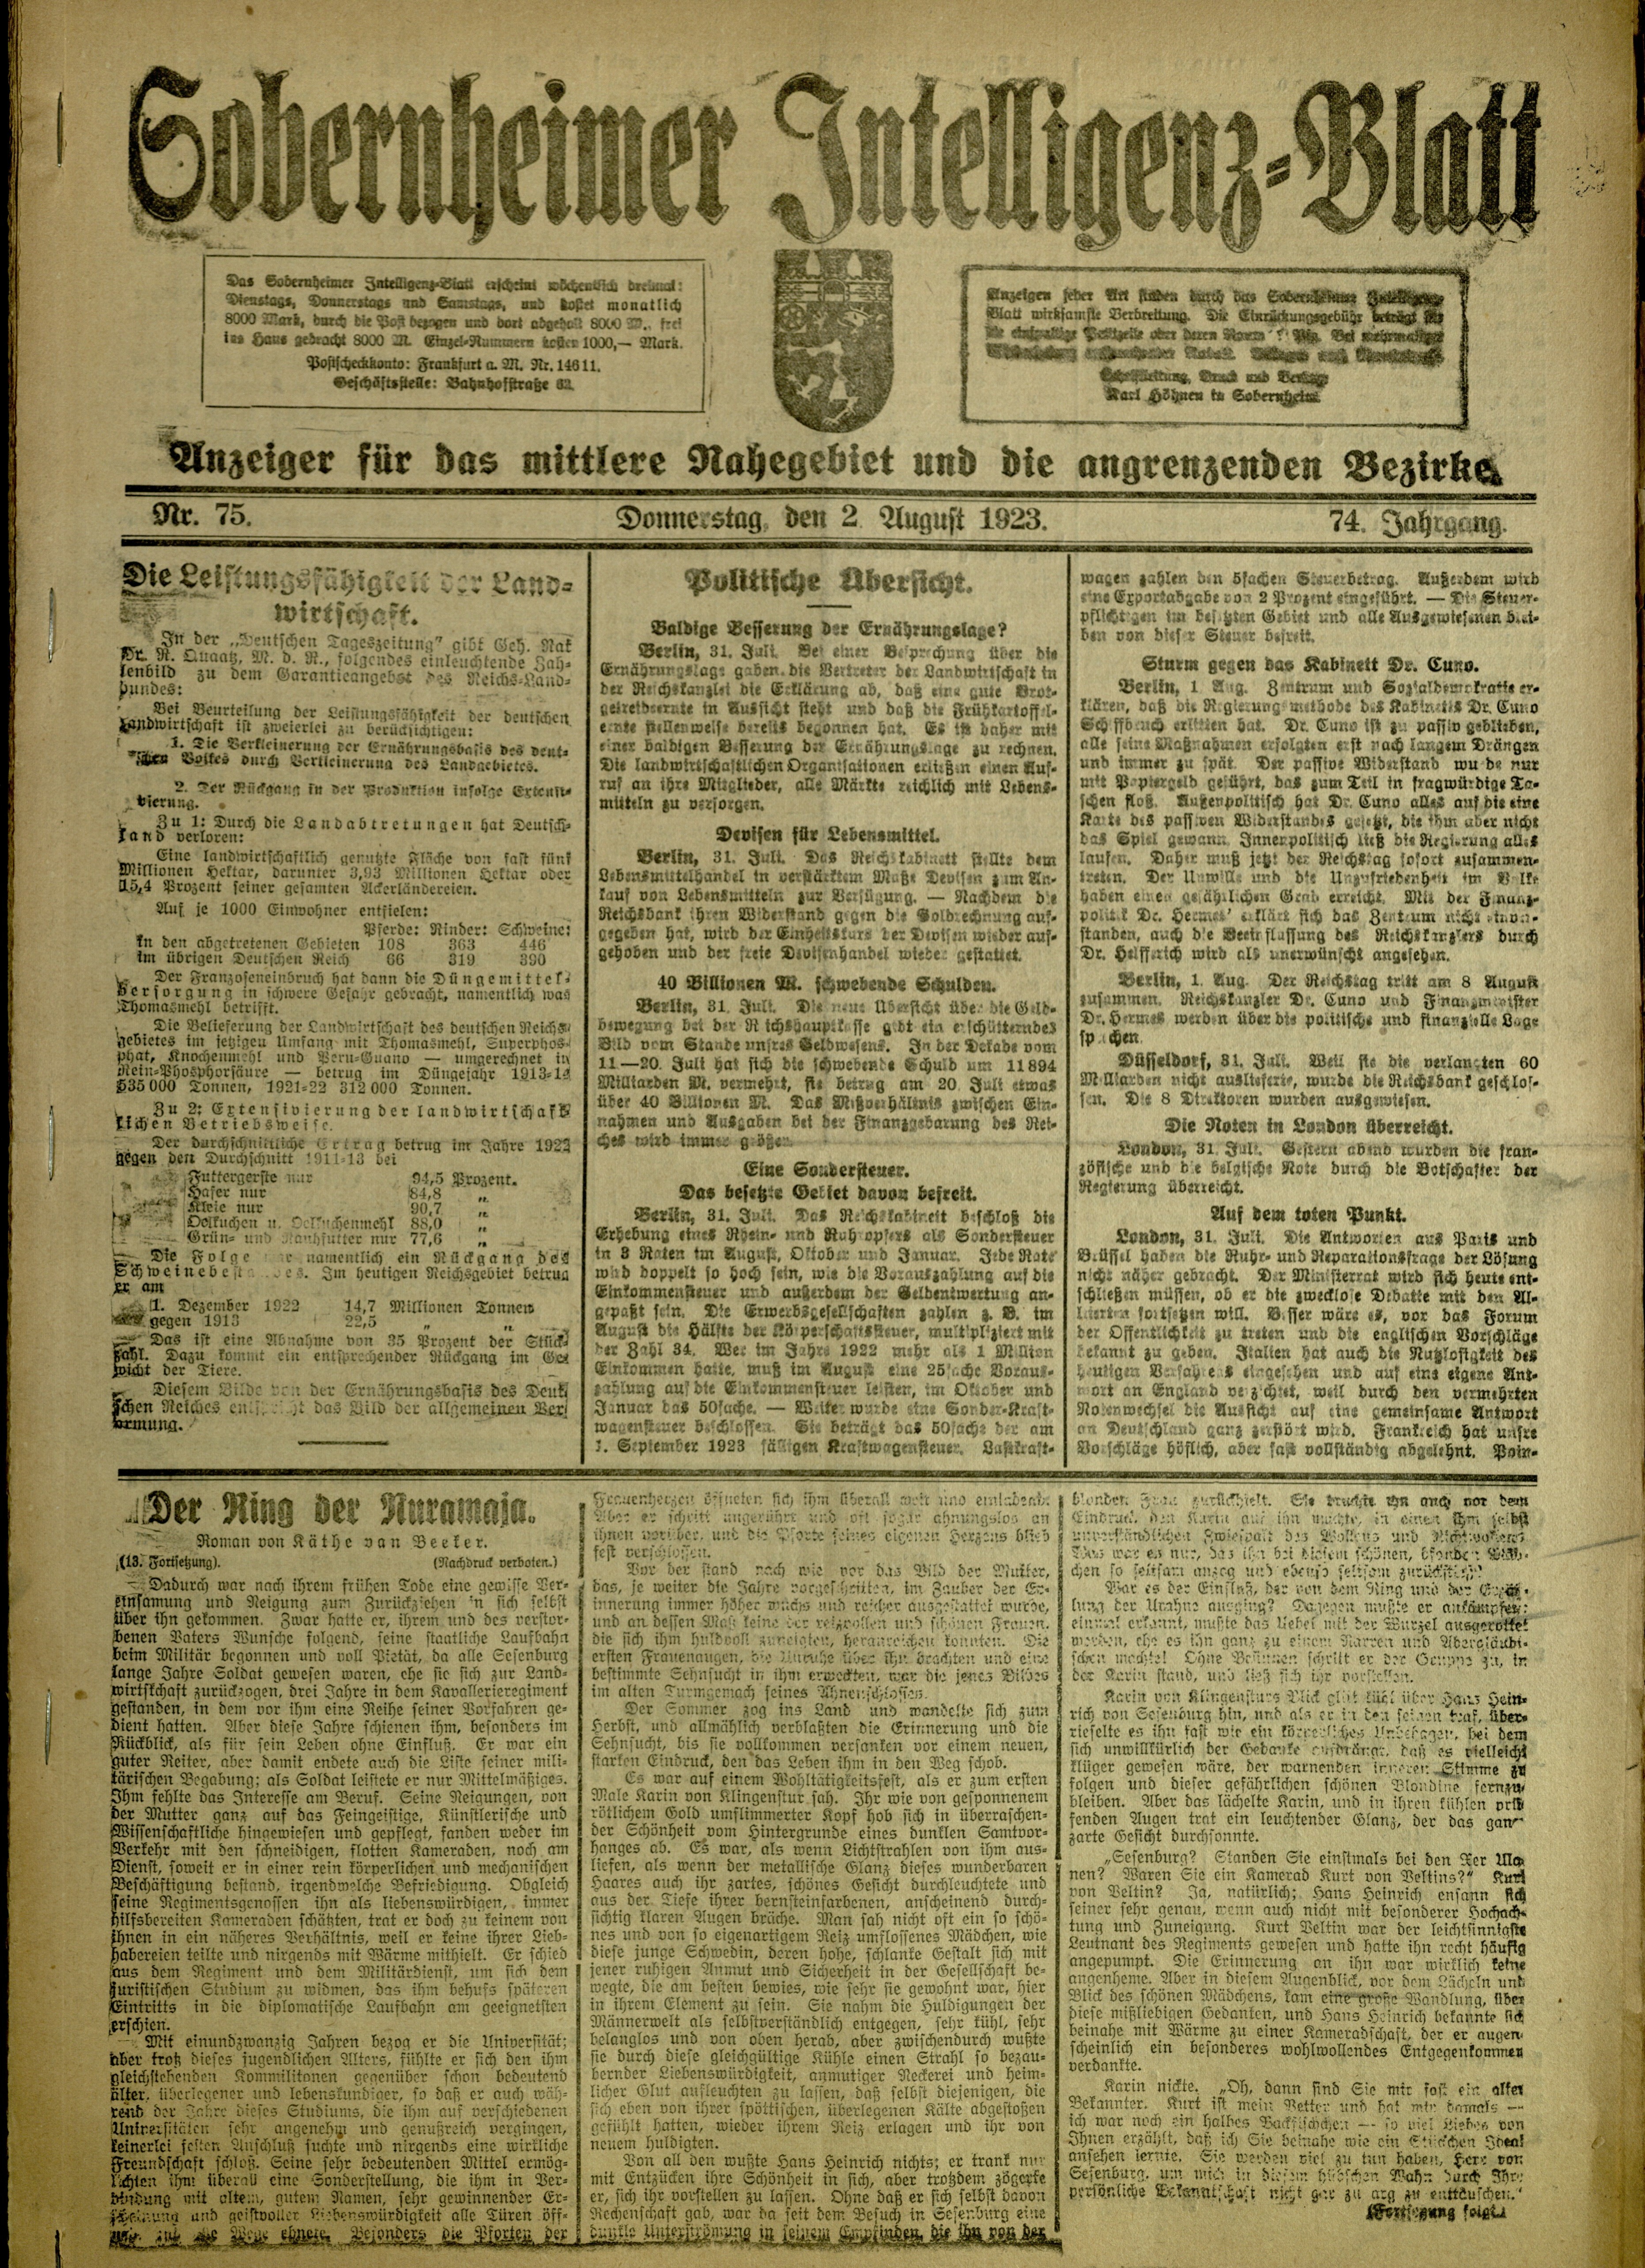 Zeitung: Sobernheimer Intelligenzblatt; August 1923, Jg. 73 Nr. 75 (Heimatmuseum Bad Sobernheim CC BY-NC-SA)